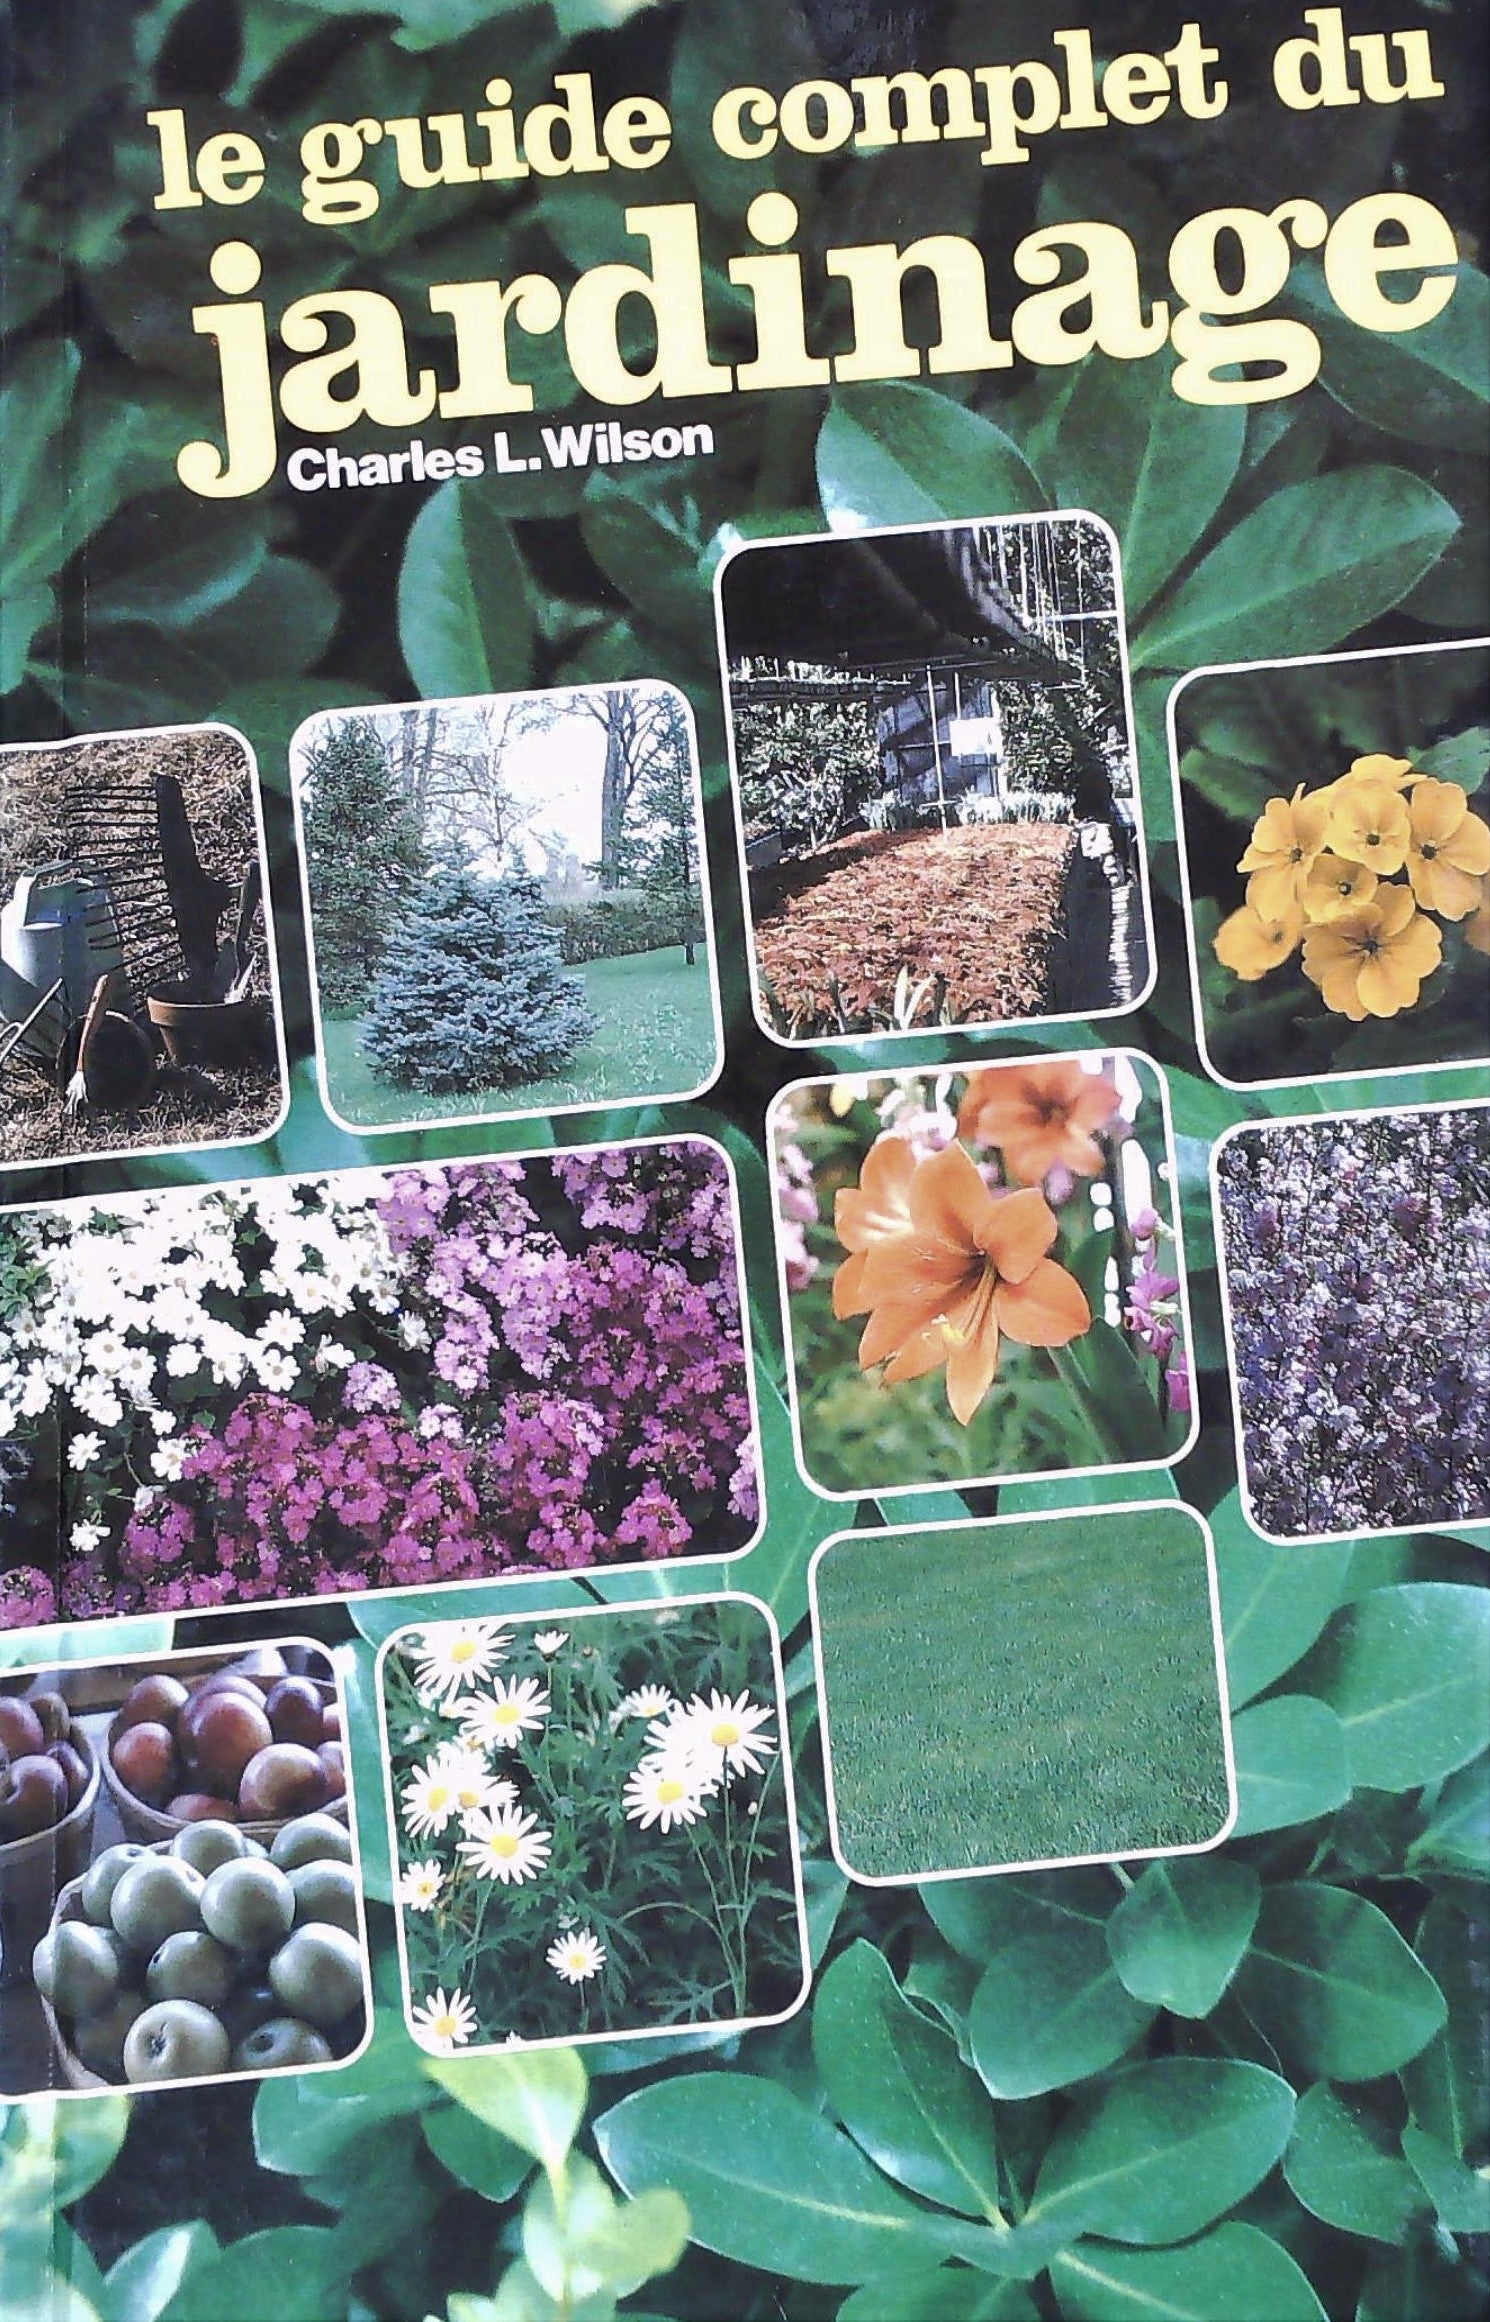 Livre ISBN 0761900731 Le guide complet du jardinage (Charles L. Wilson)